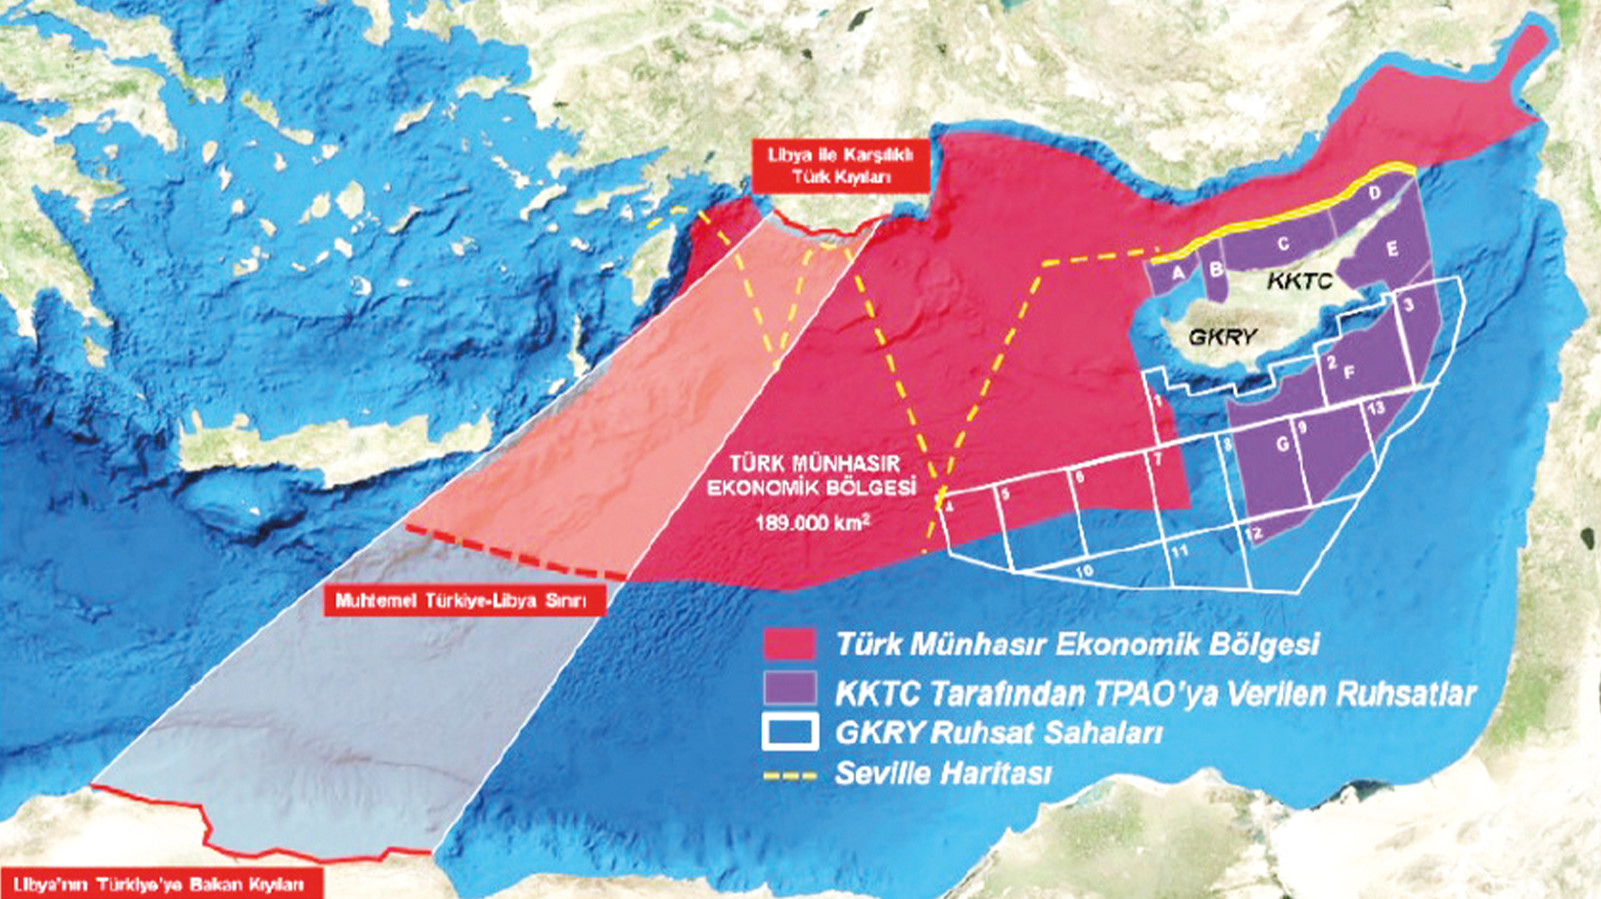 Τουρκικά ΜΜΕ για Λιβύη: «Ανατρέψαμε τα σχέδια των Ελλήνων – Eπεκτείνουμε την ΑΟΖ μας νότια της Κρήτης»